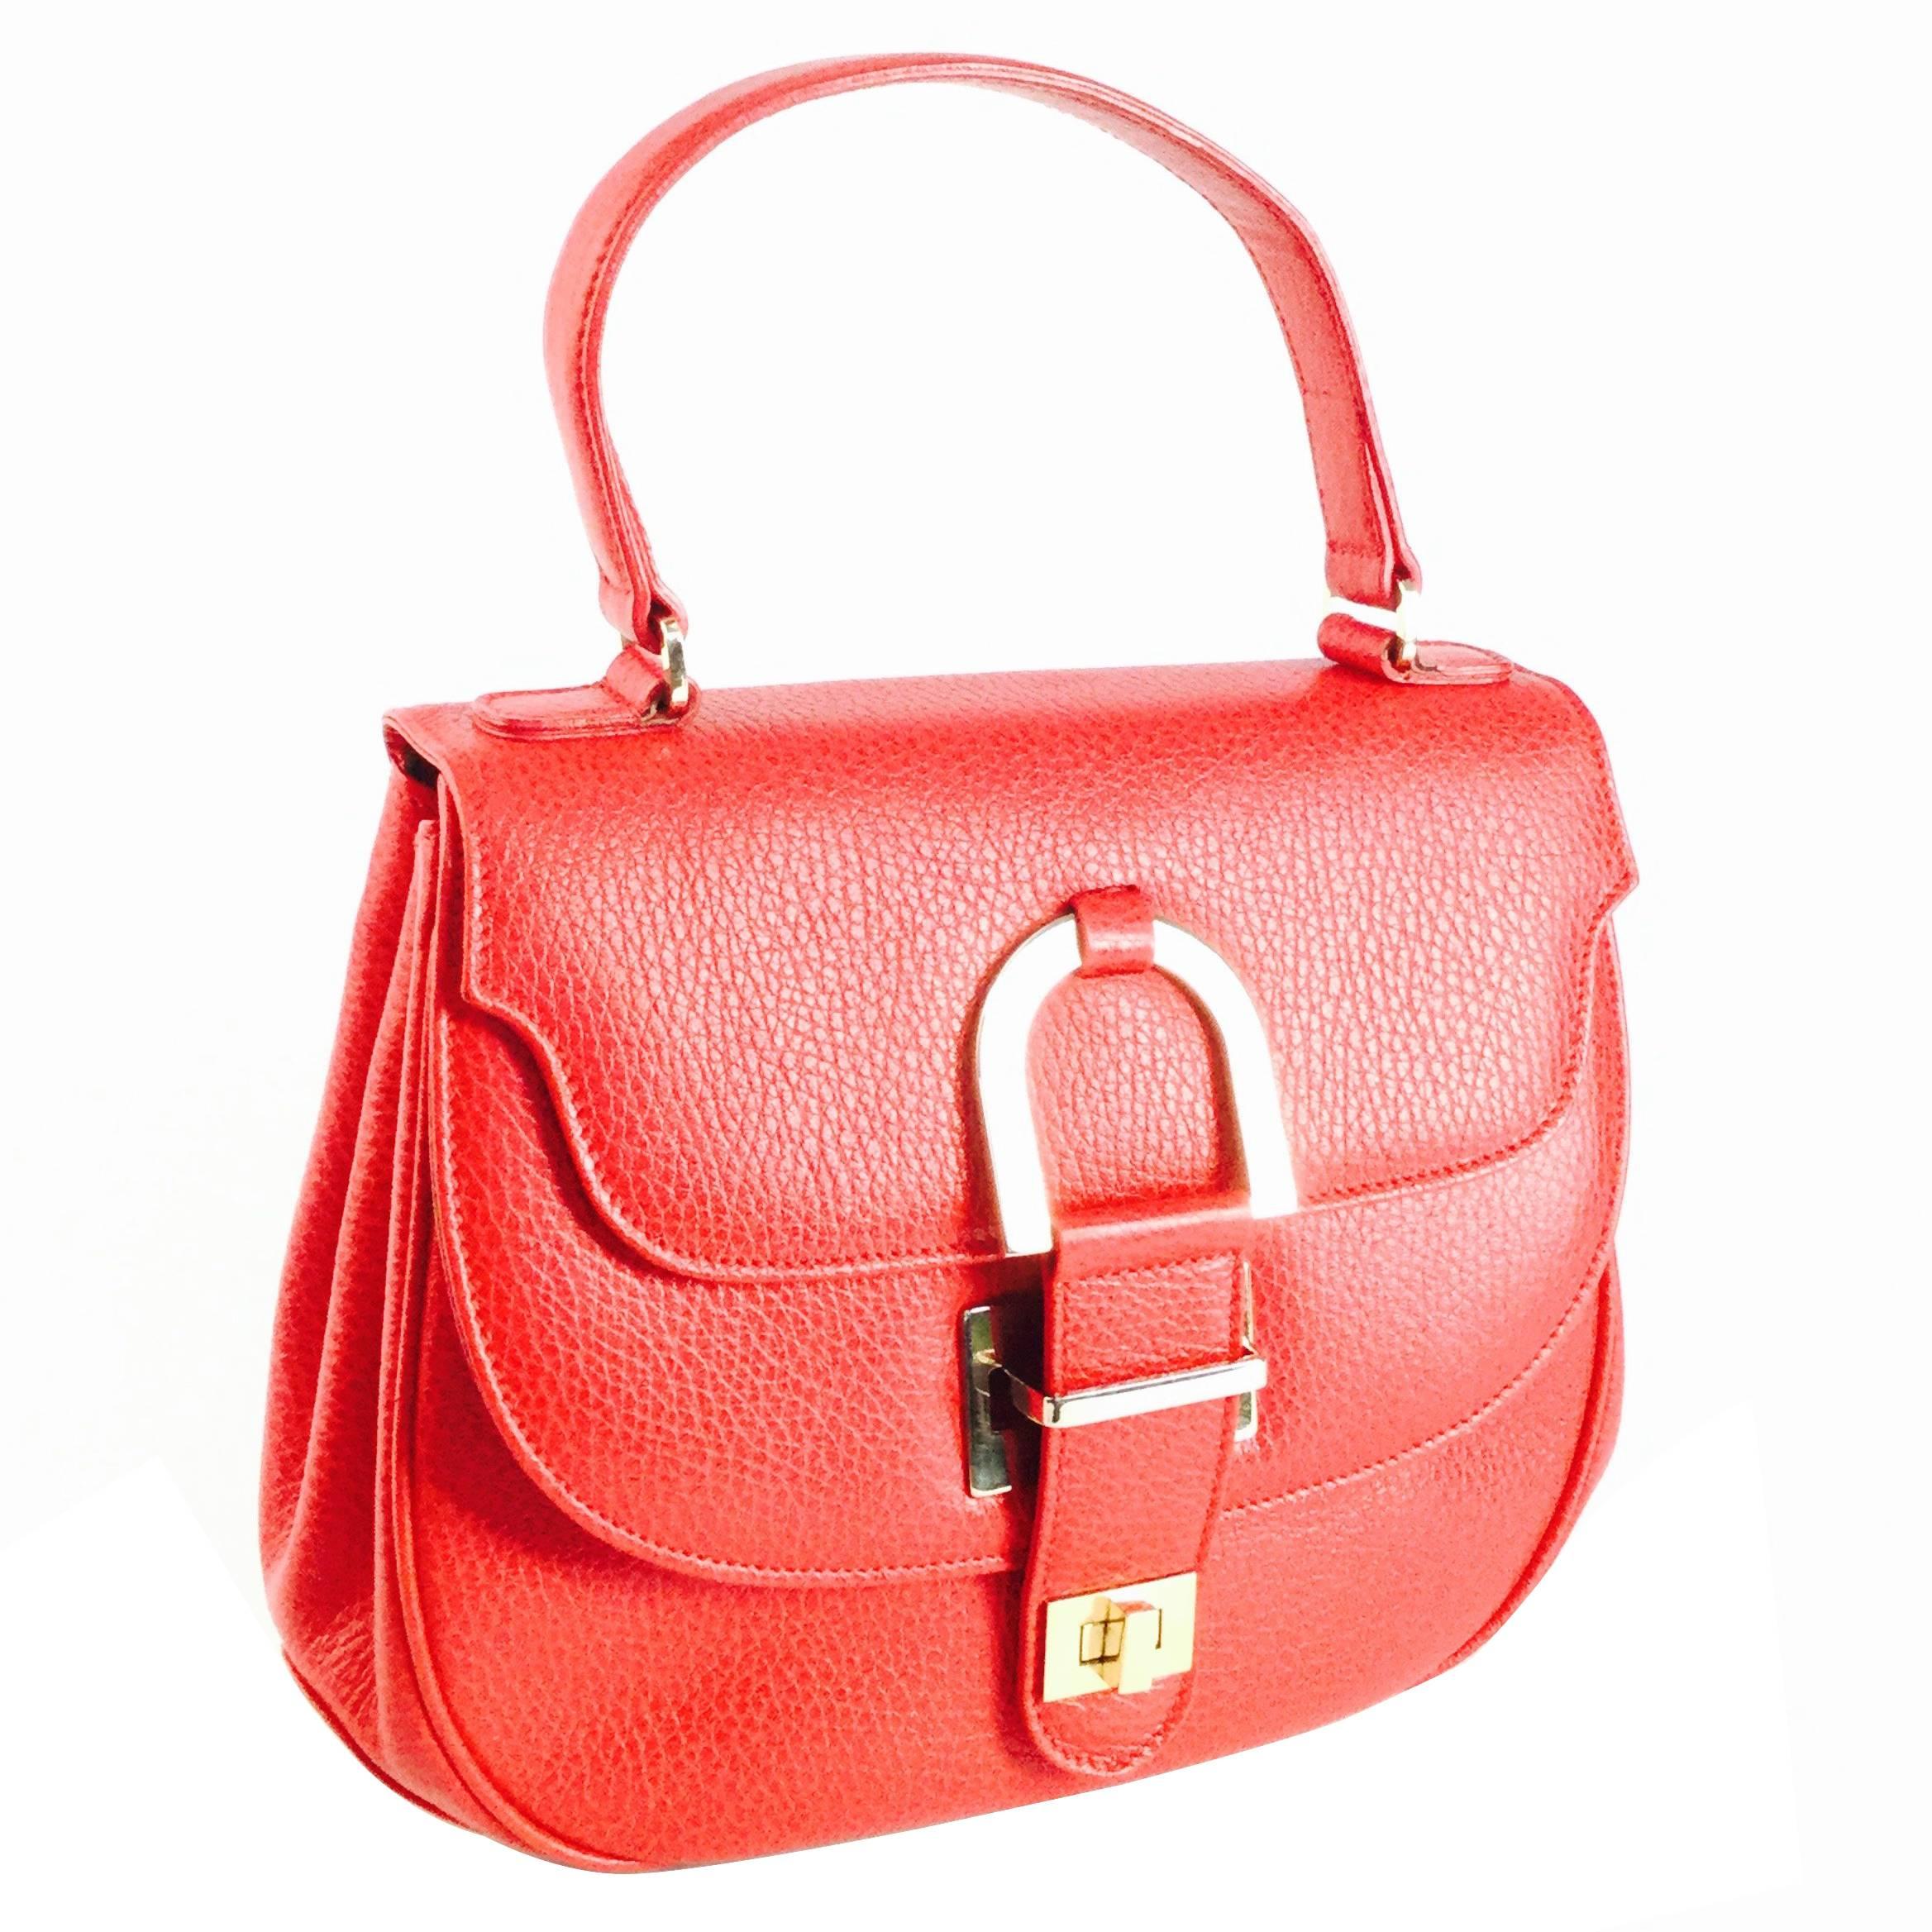  Vintage Oscar de la Renta Red Leather Top Handle Double Flap Saddle Bag For Sale